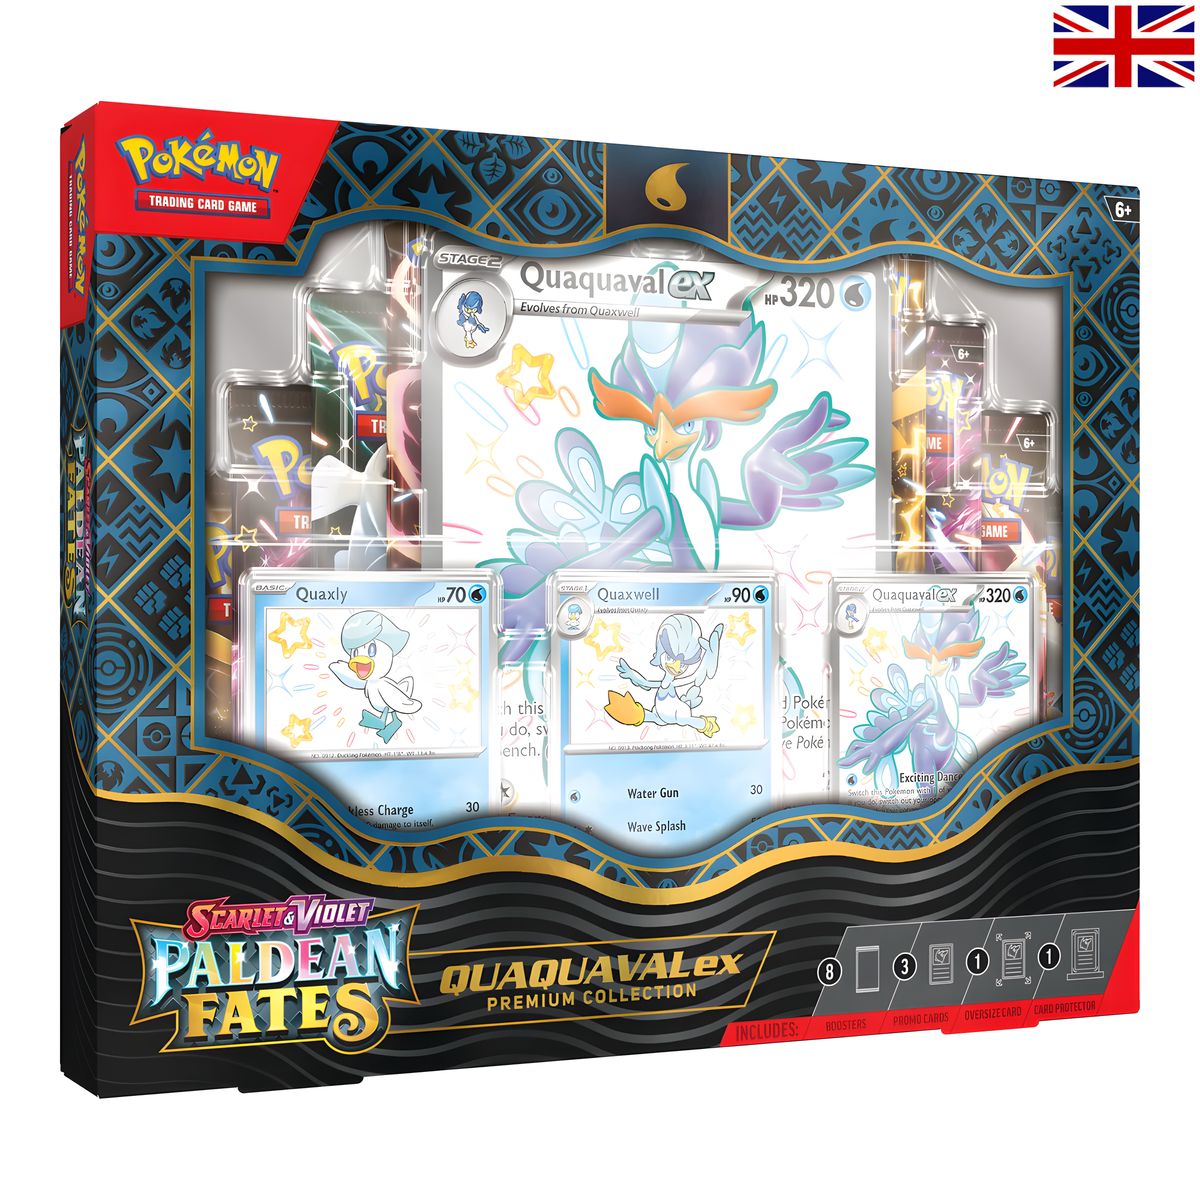 Pokémon - Paldean Fates Premium Collection - Quaquaval